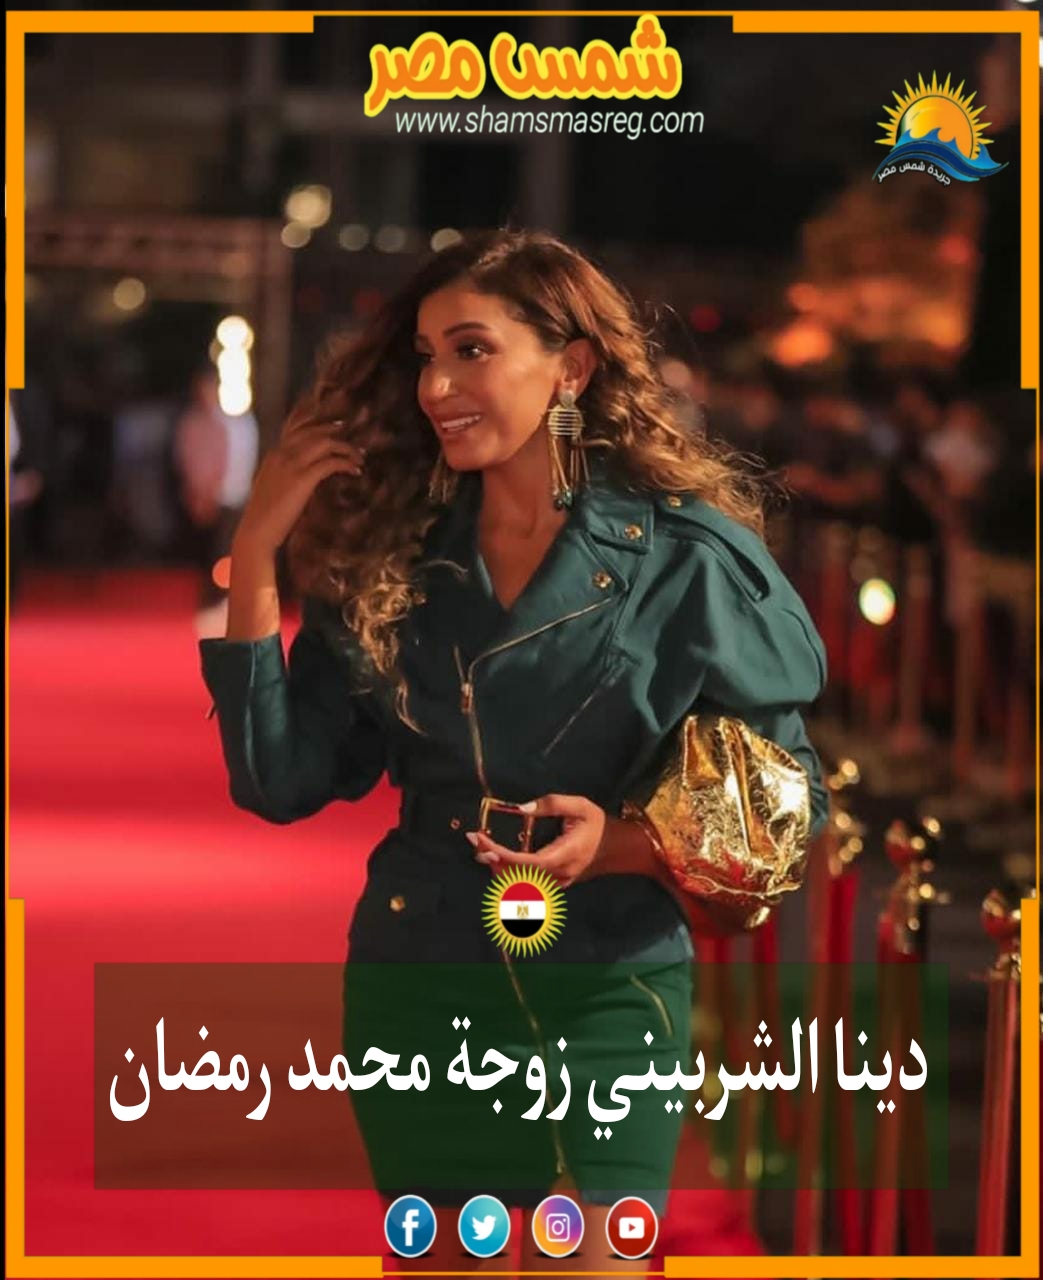 |شمس مصر|.. دينا الشربيني زوجة محمد رمضان